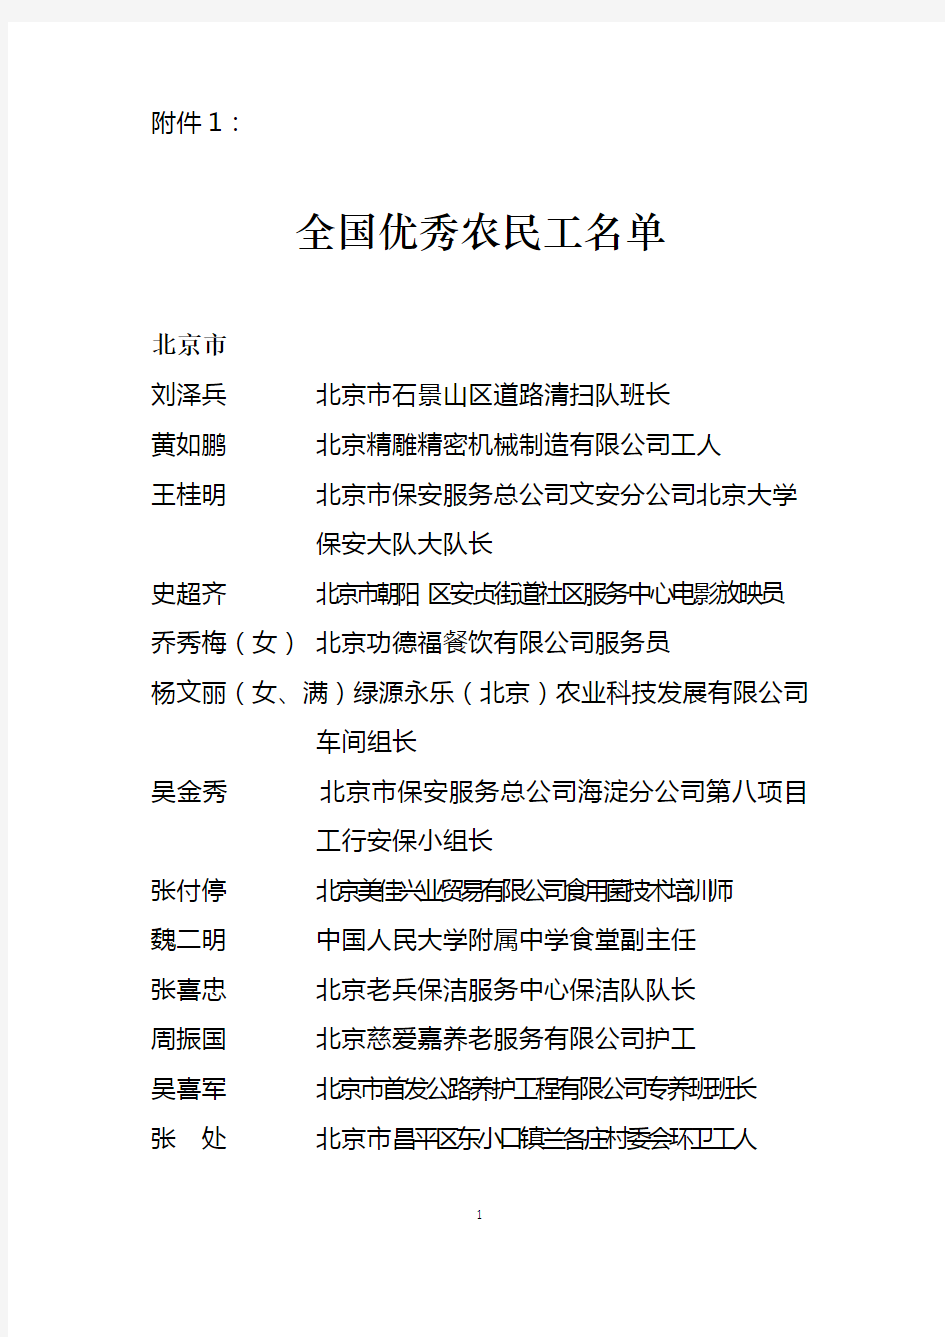 全国优秀农民工名单 - 中华人民共和国人力资源和社会保障部